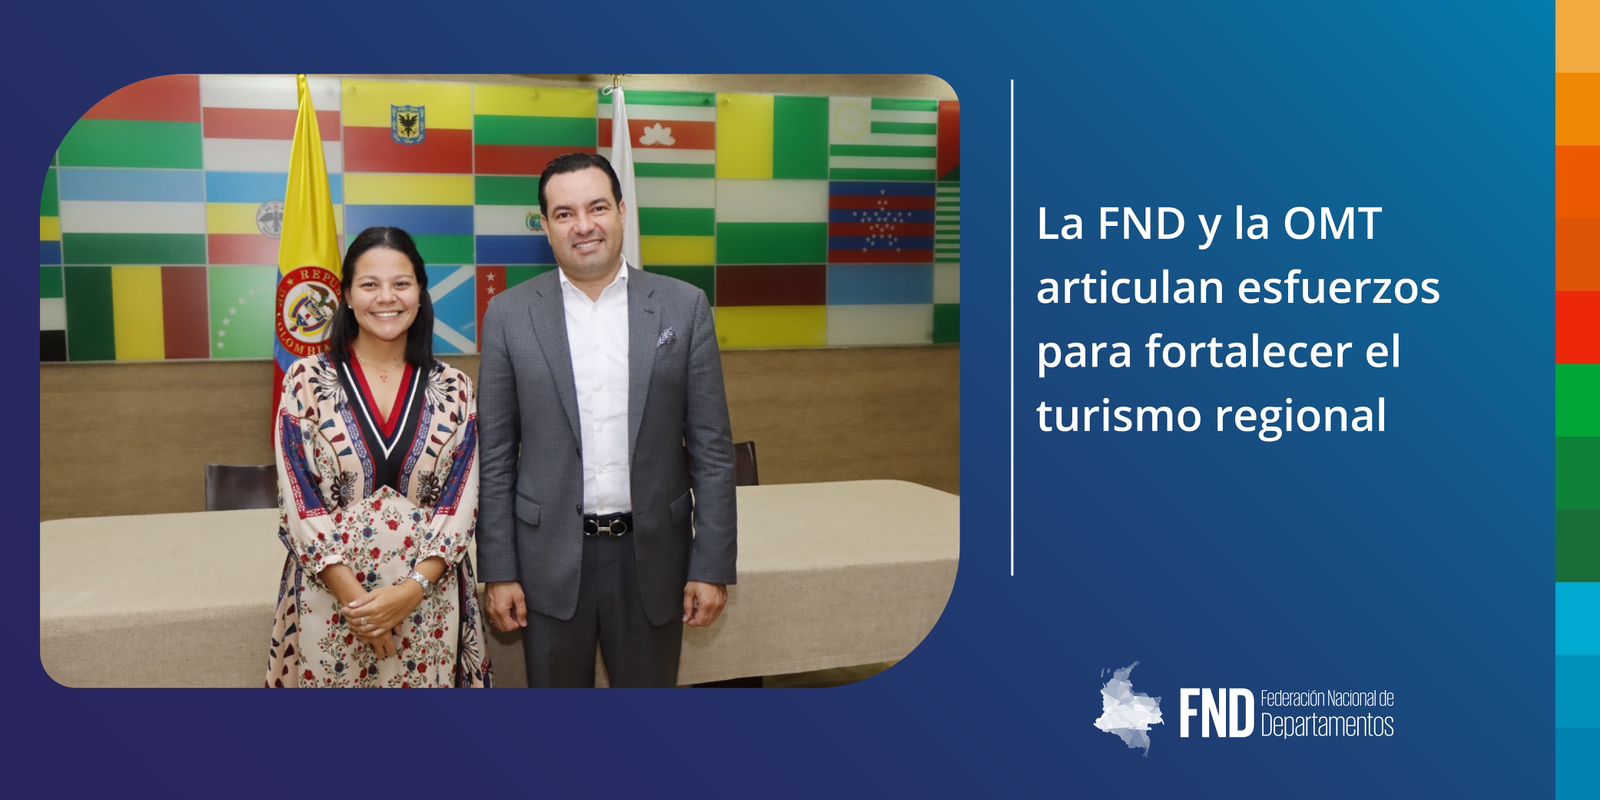 La FND y la OMT articulan esfuerzos para fortalecer el turismo regional